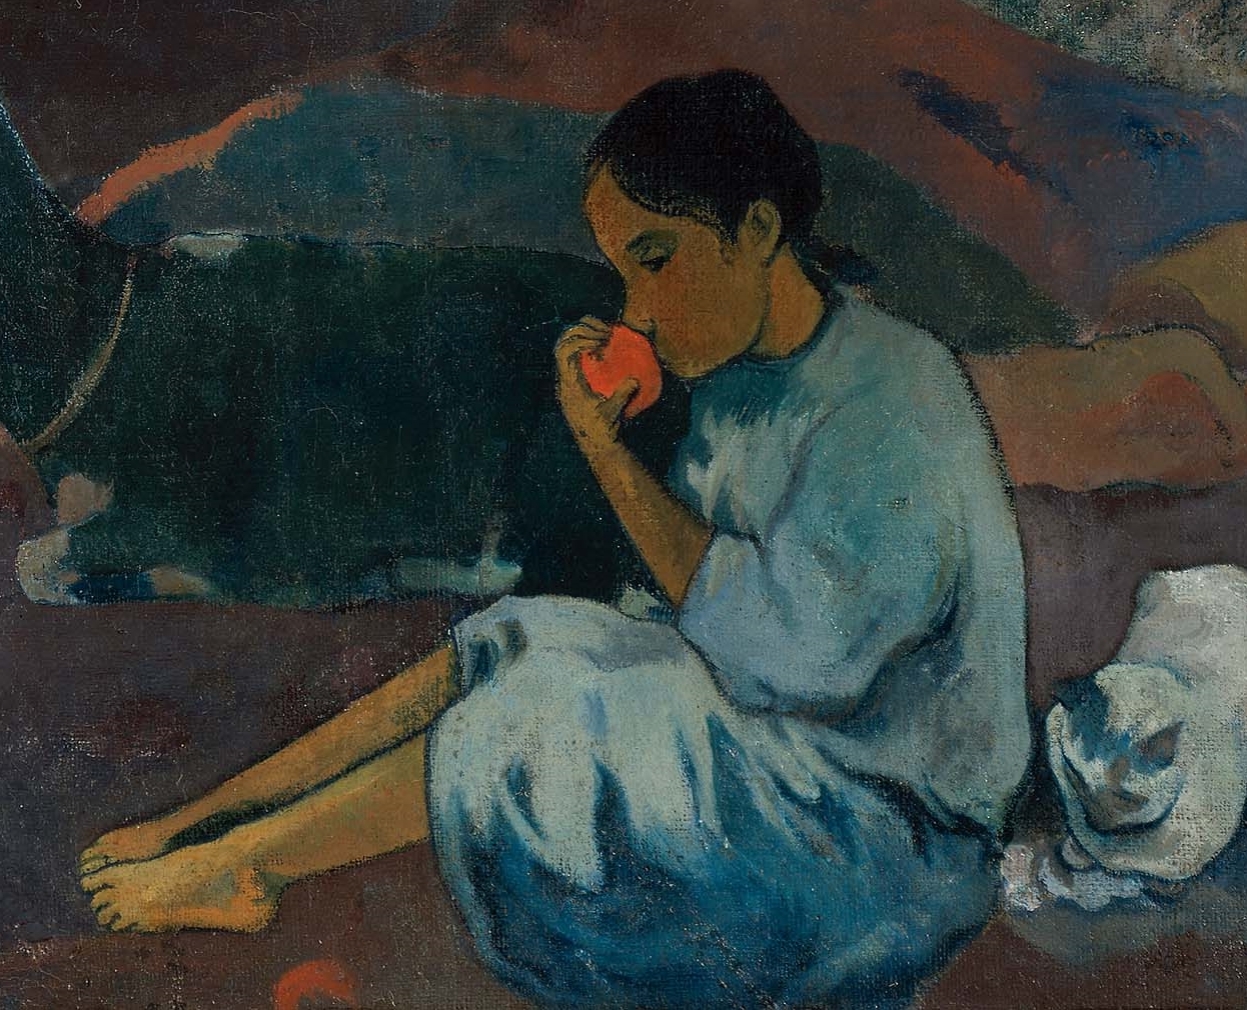 Paul+Gauguin-1848-1903 (487).jpg